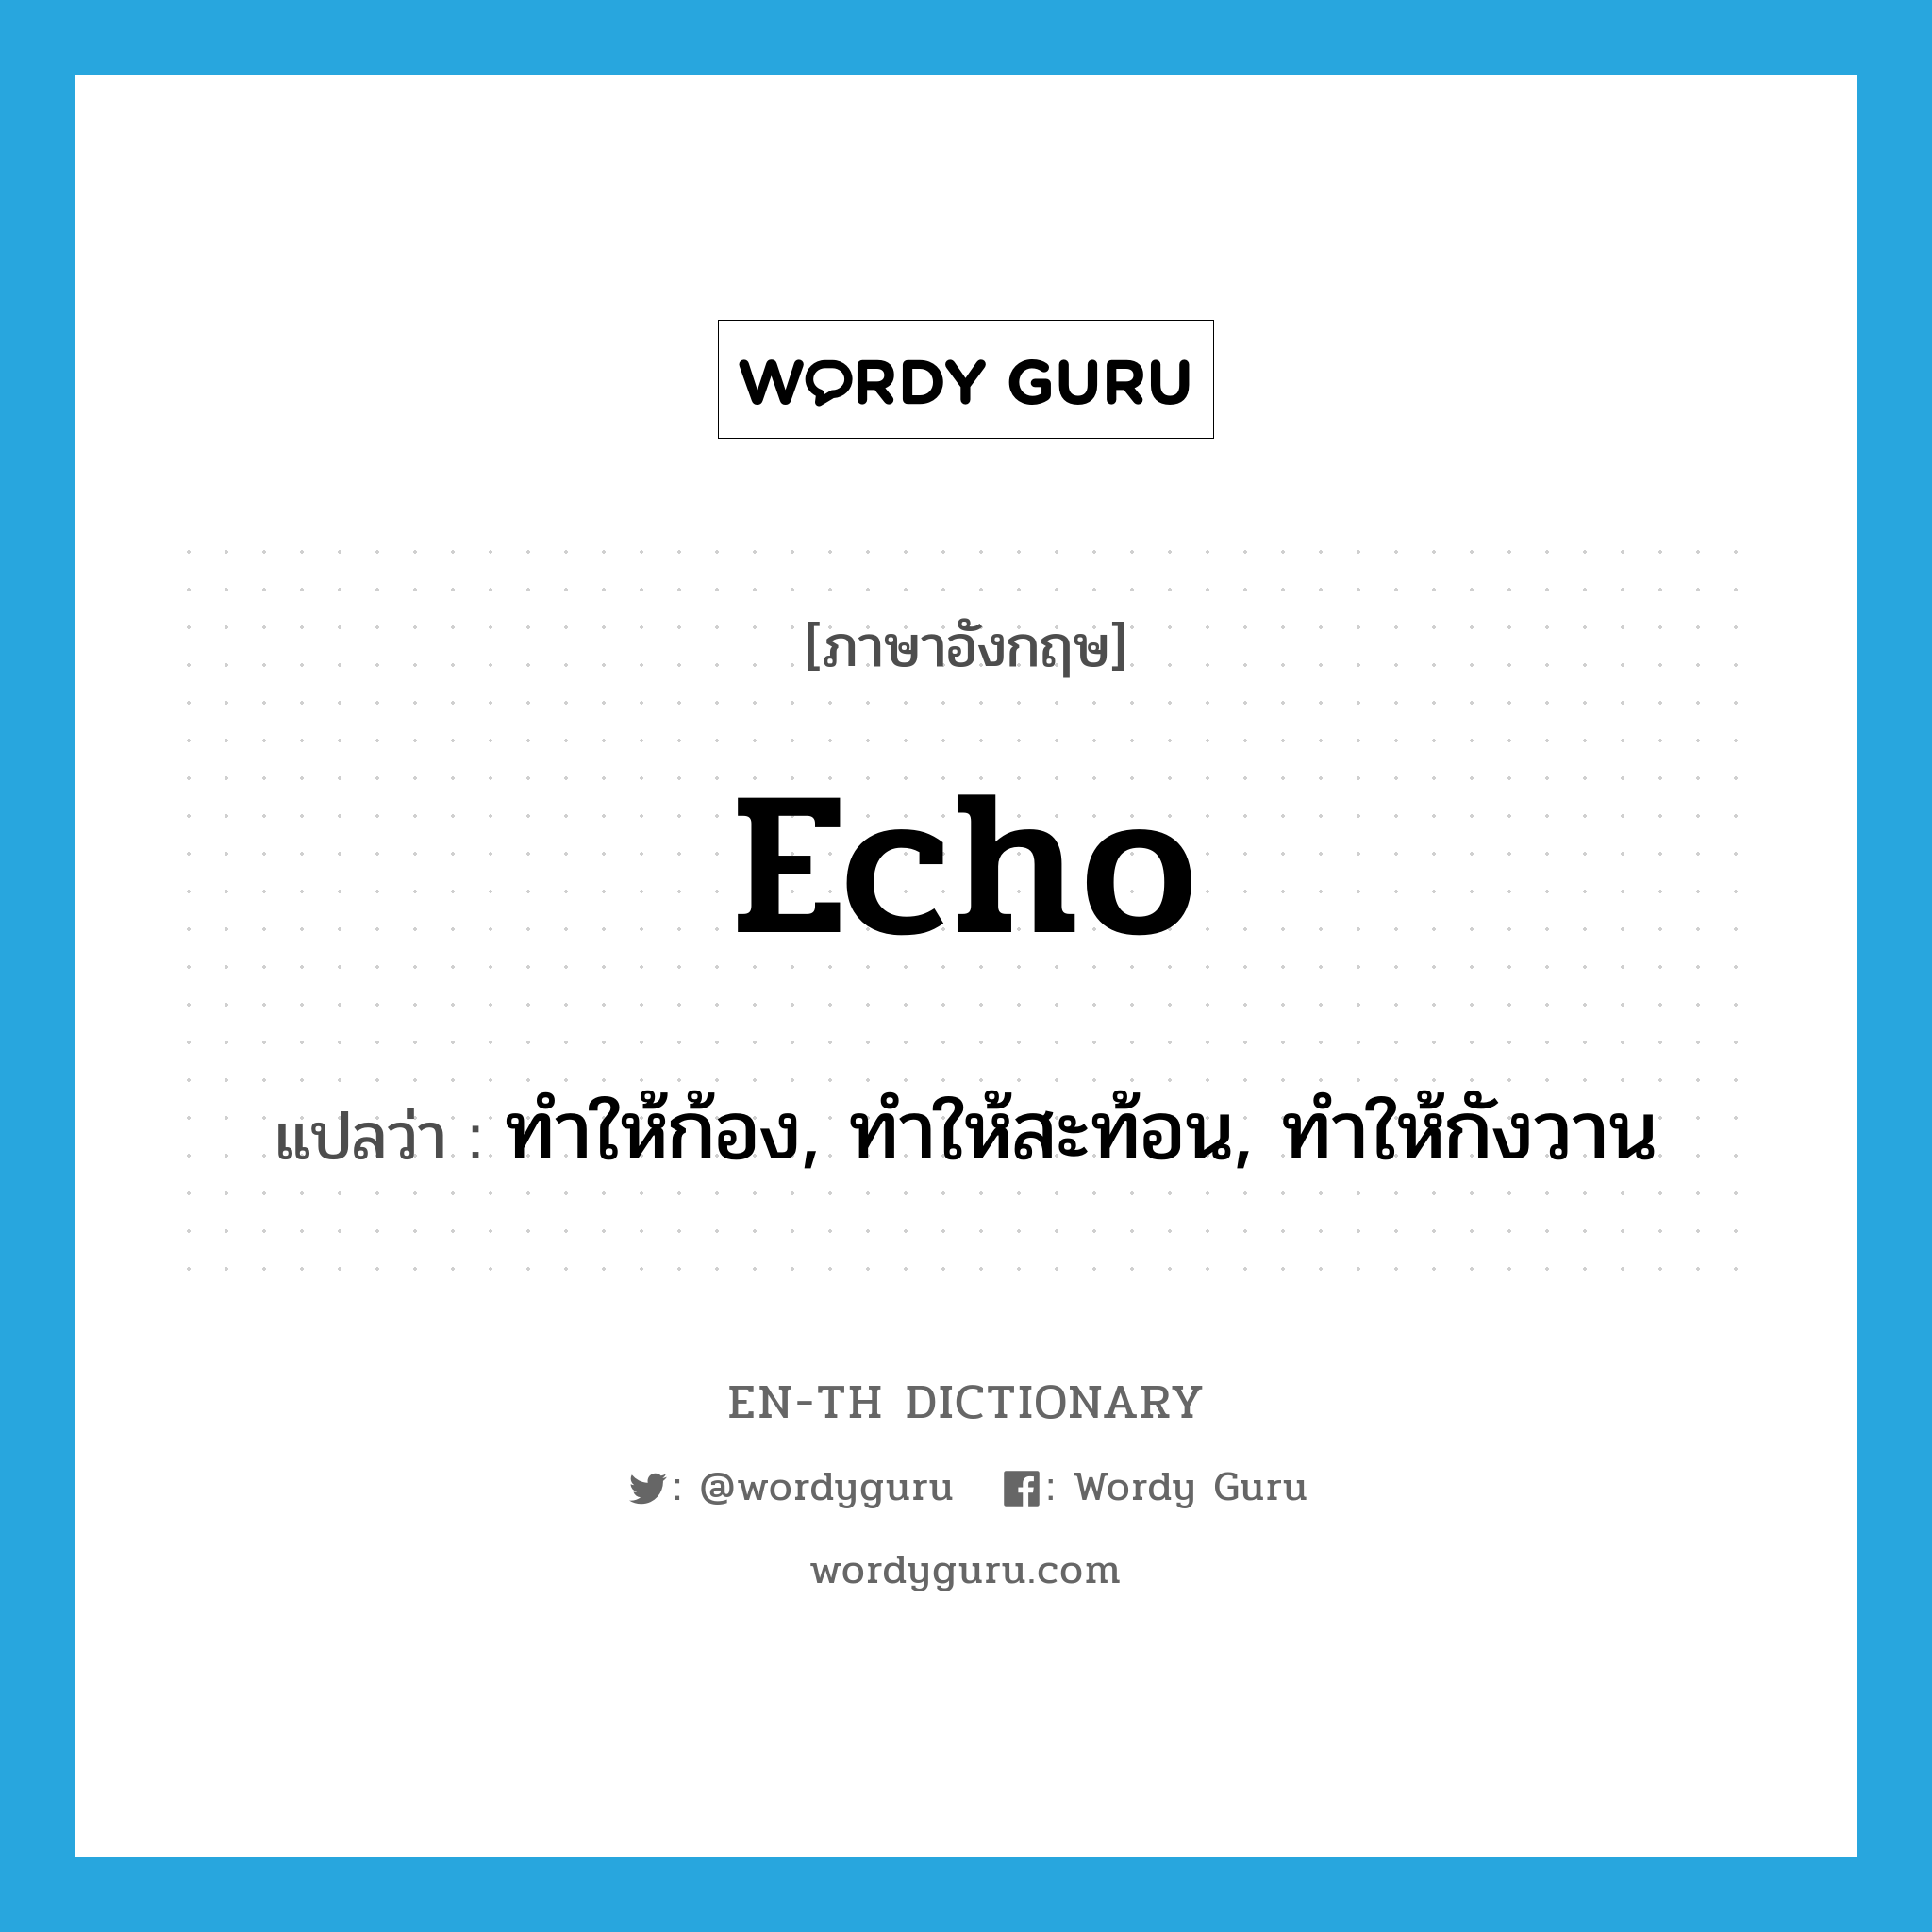 echo แปลว่า?, คำศัพท์ภาษาอังกฤษ echo แปลว่า ทำให้ก้อง, ทำให้สะท้อน, ทำให้กังวาน ประเภท VT หมวด VT